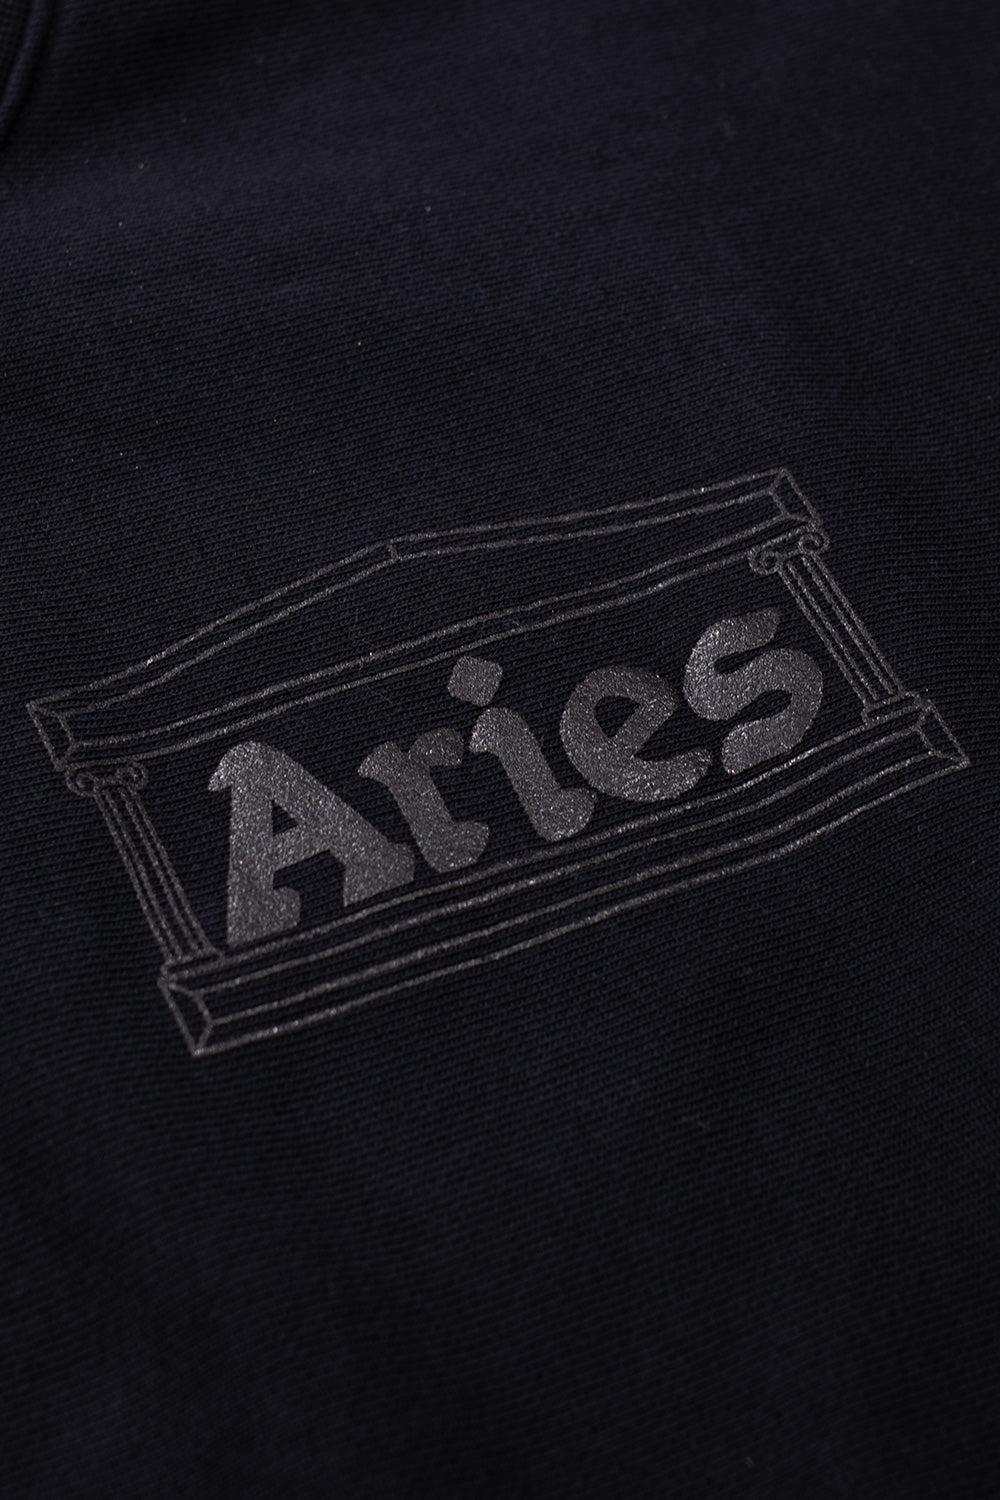 Aries Premium Temple Sweatshirt Black - BONKERS